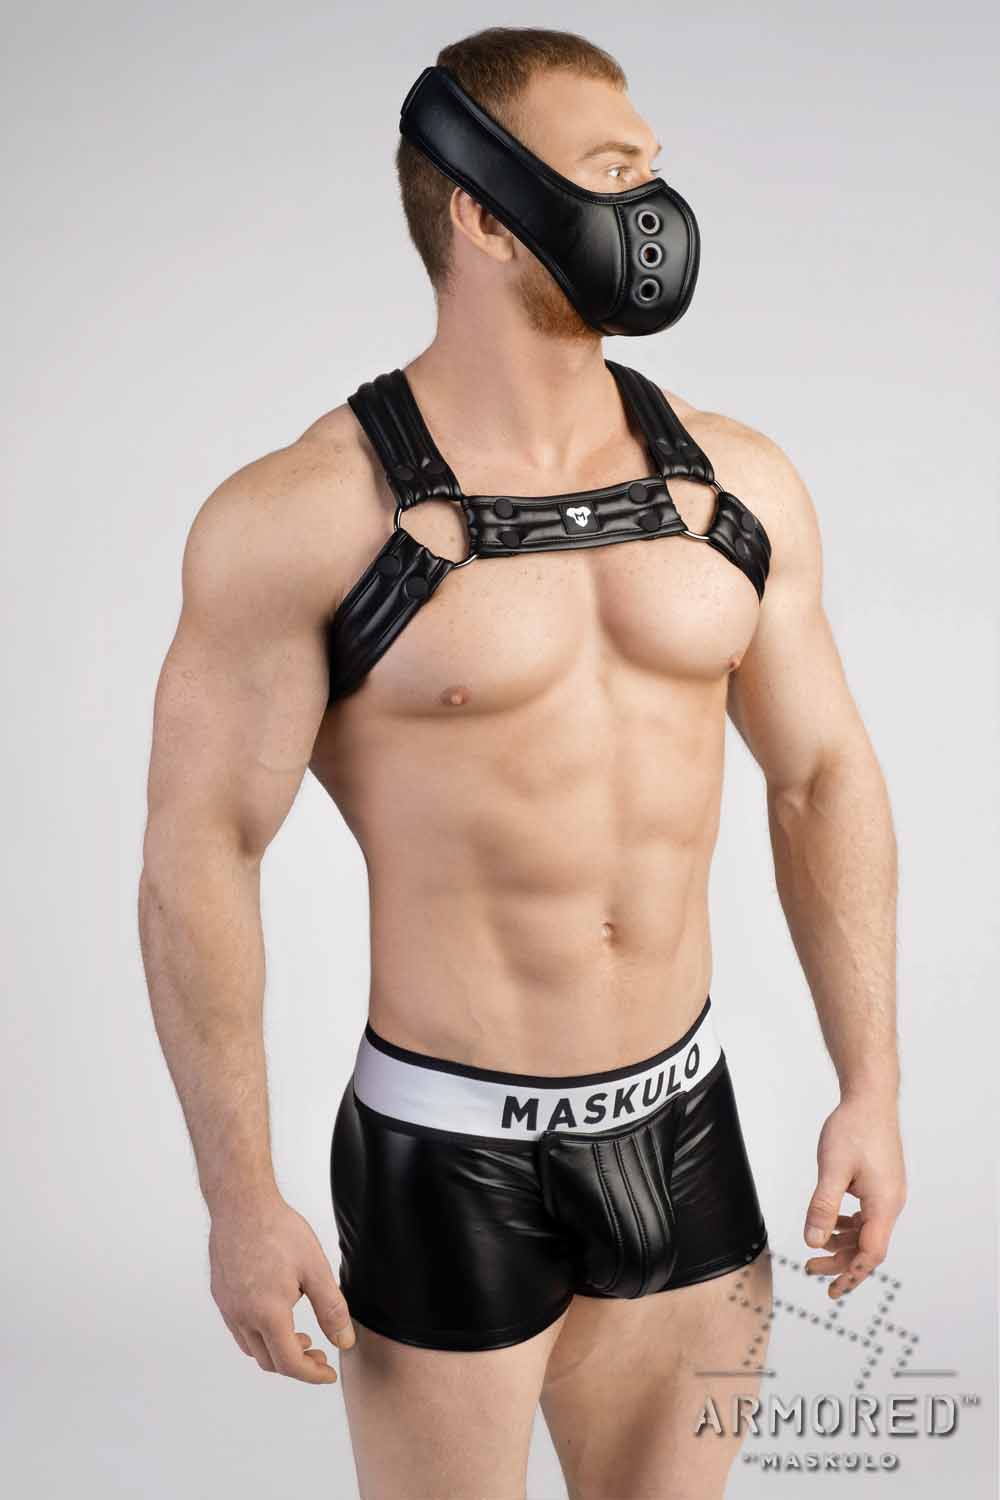 Armored Next. Männer-Fetisch Bulldog Harness